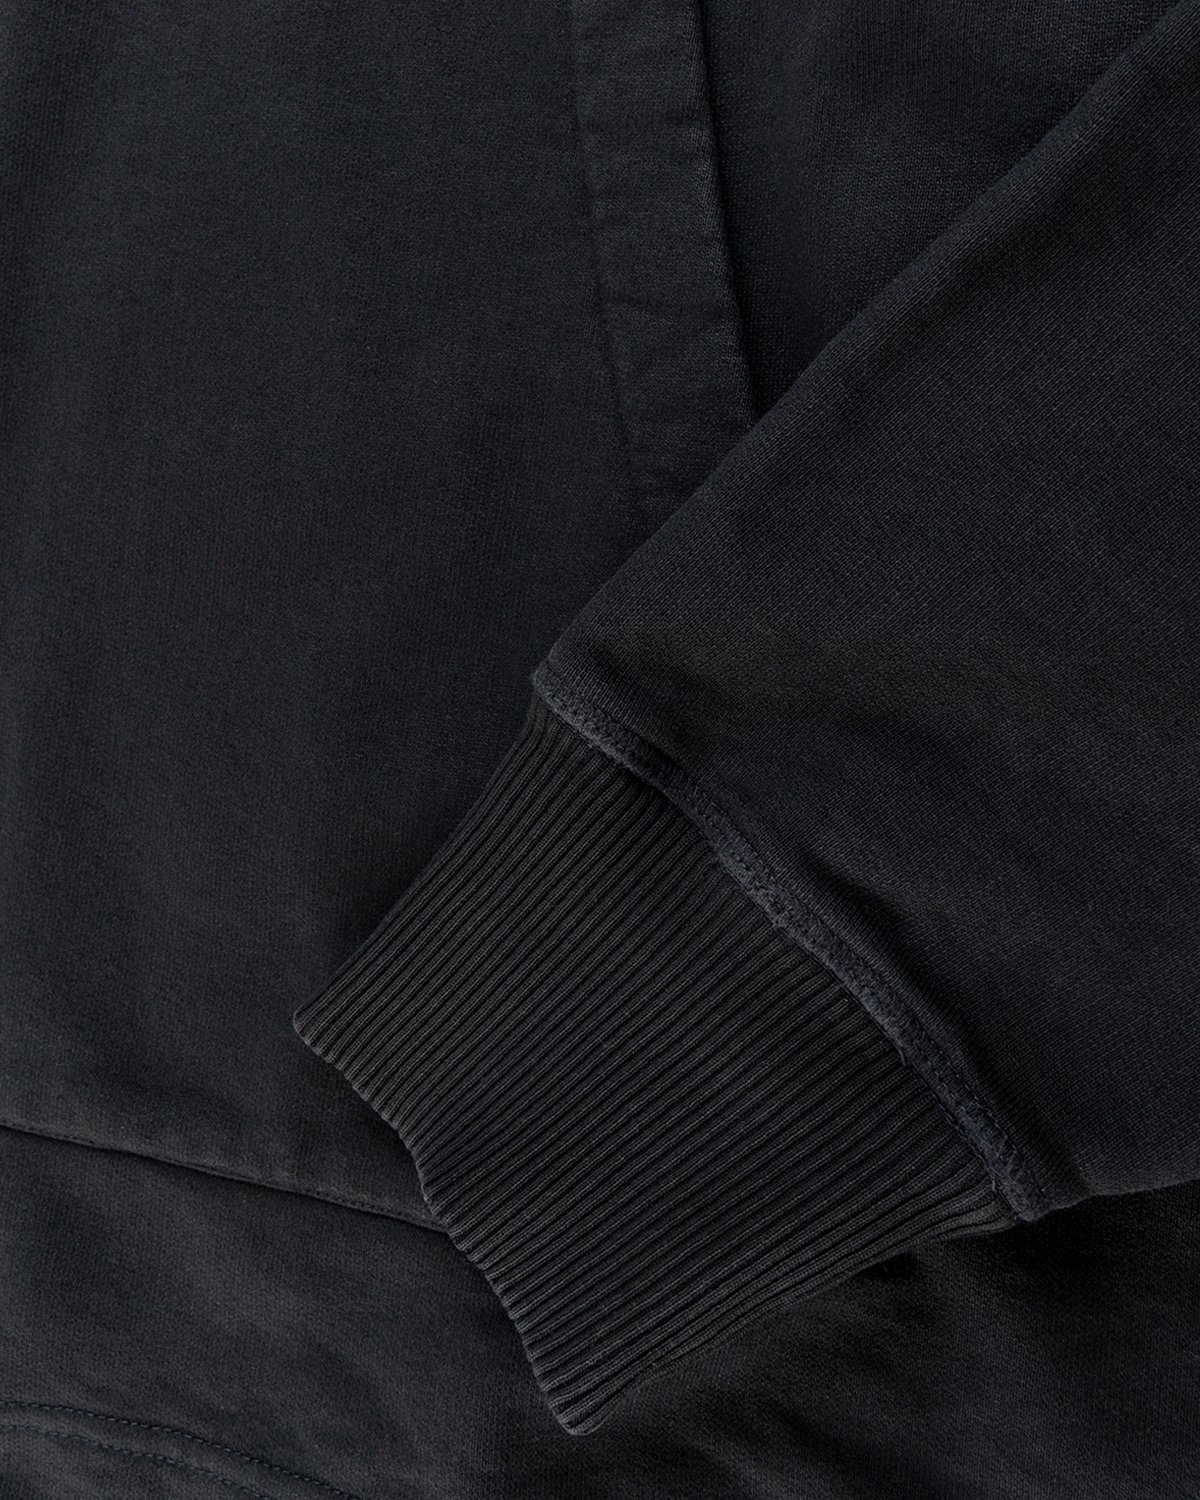 Acne Studios - Hoodie Black - Clothing - Black - Image 4